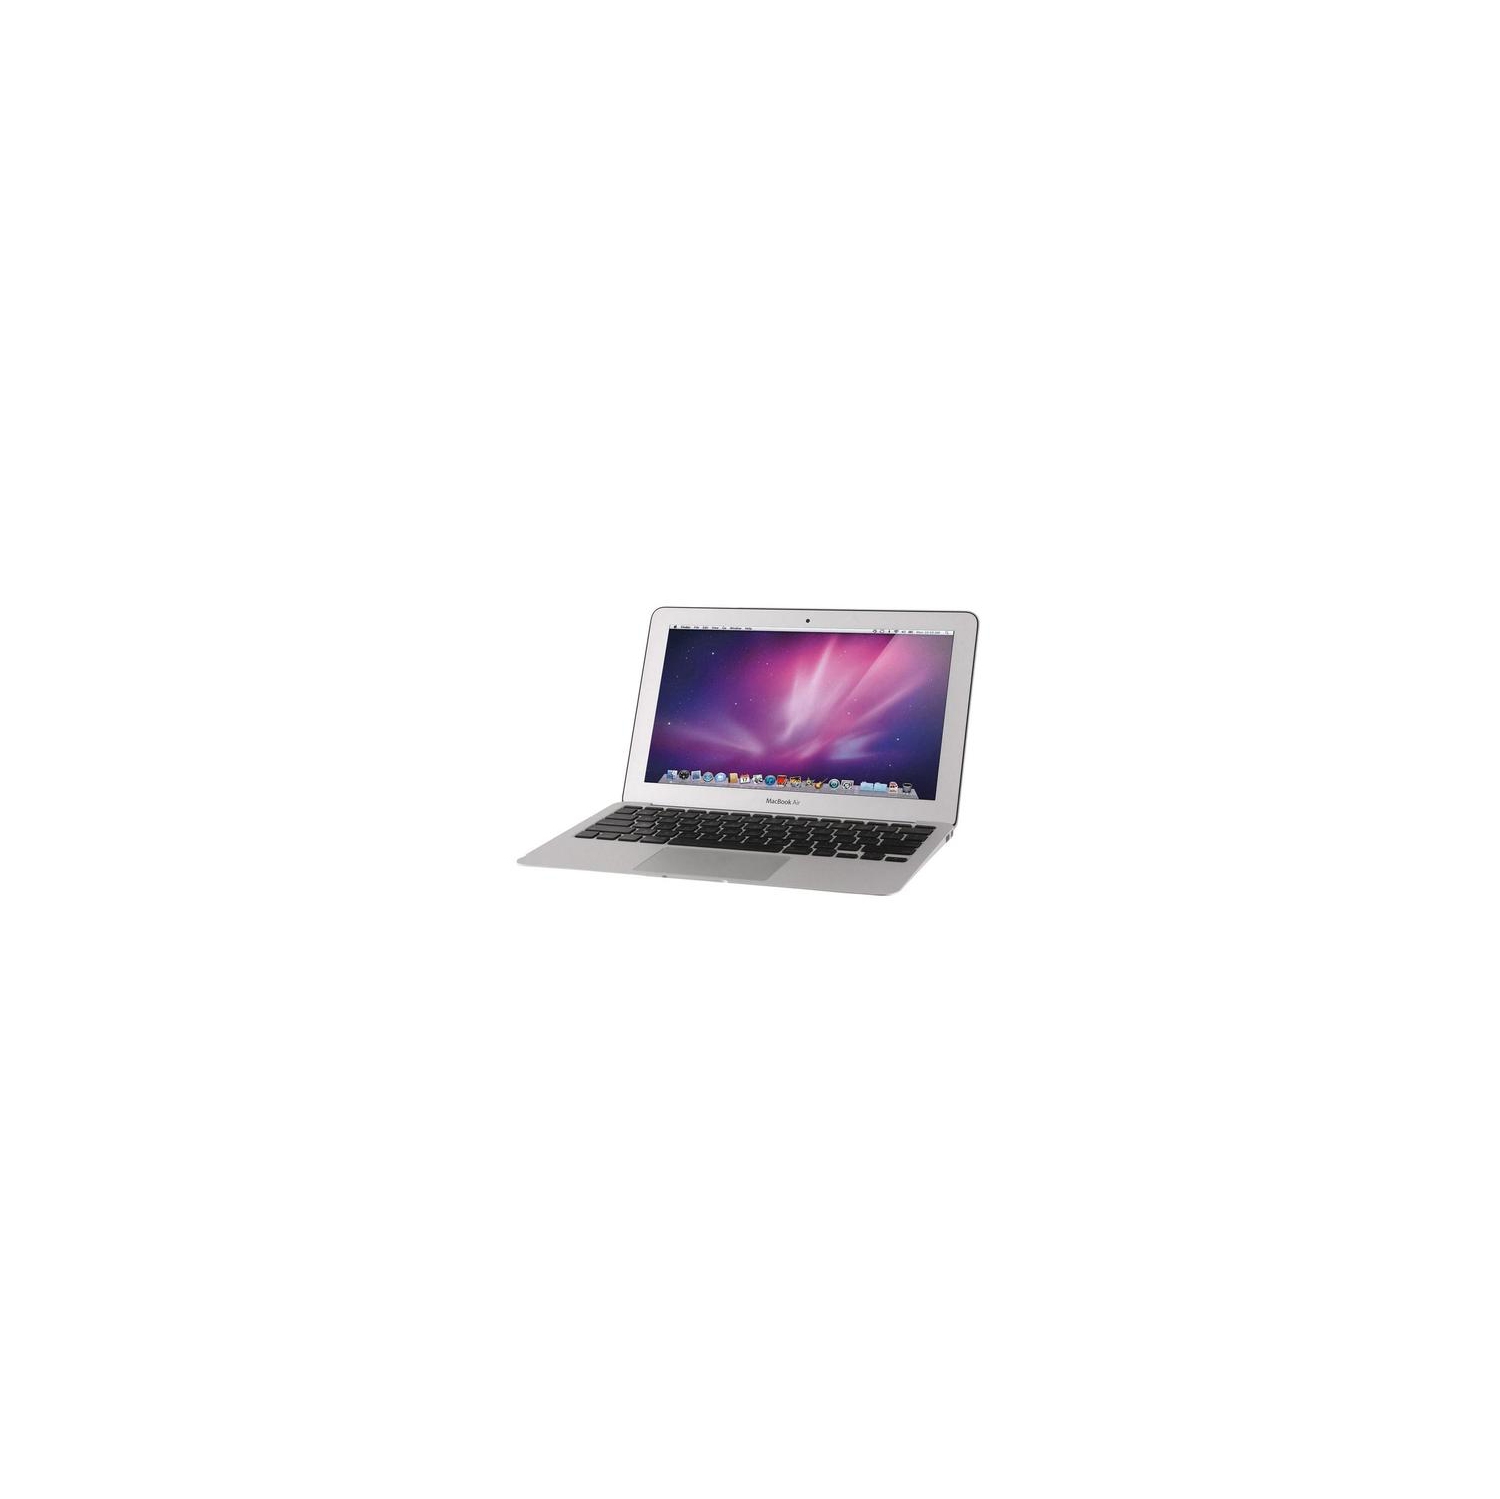 Refurbished (Good) - Apple Macbook Air 13" Core I5-5250U 1.6GHz 4GB 128GB SSD - 2015 Model - ( A1466 / MJVE2LL/A )